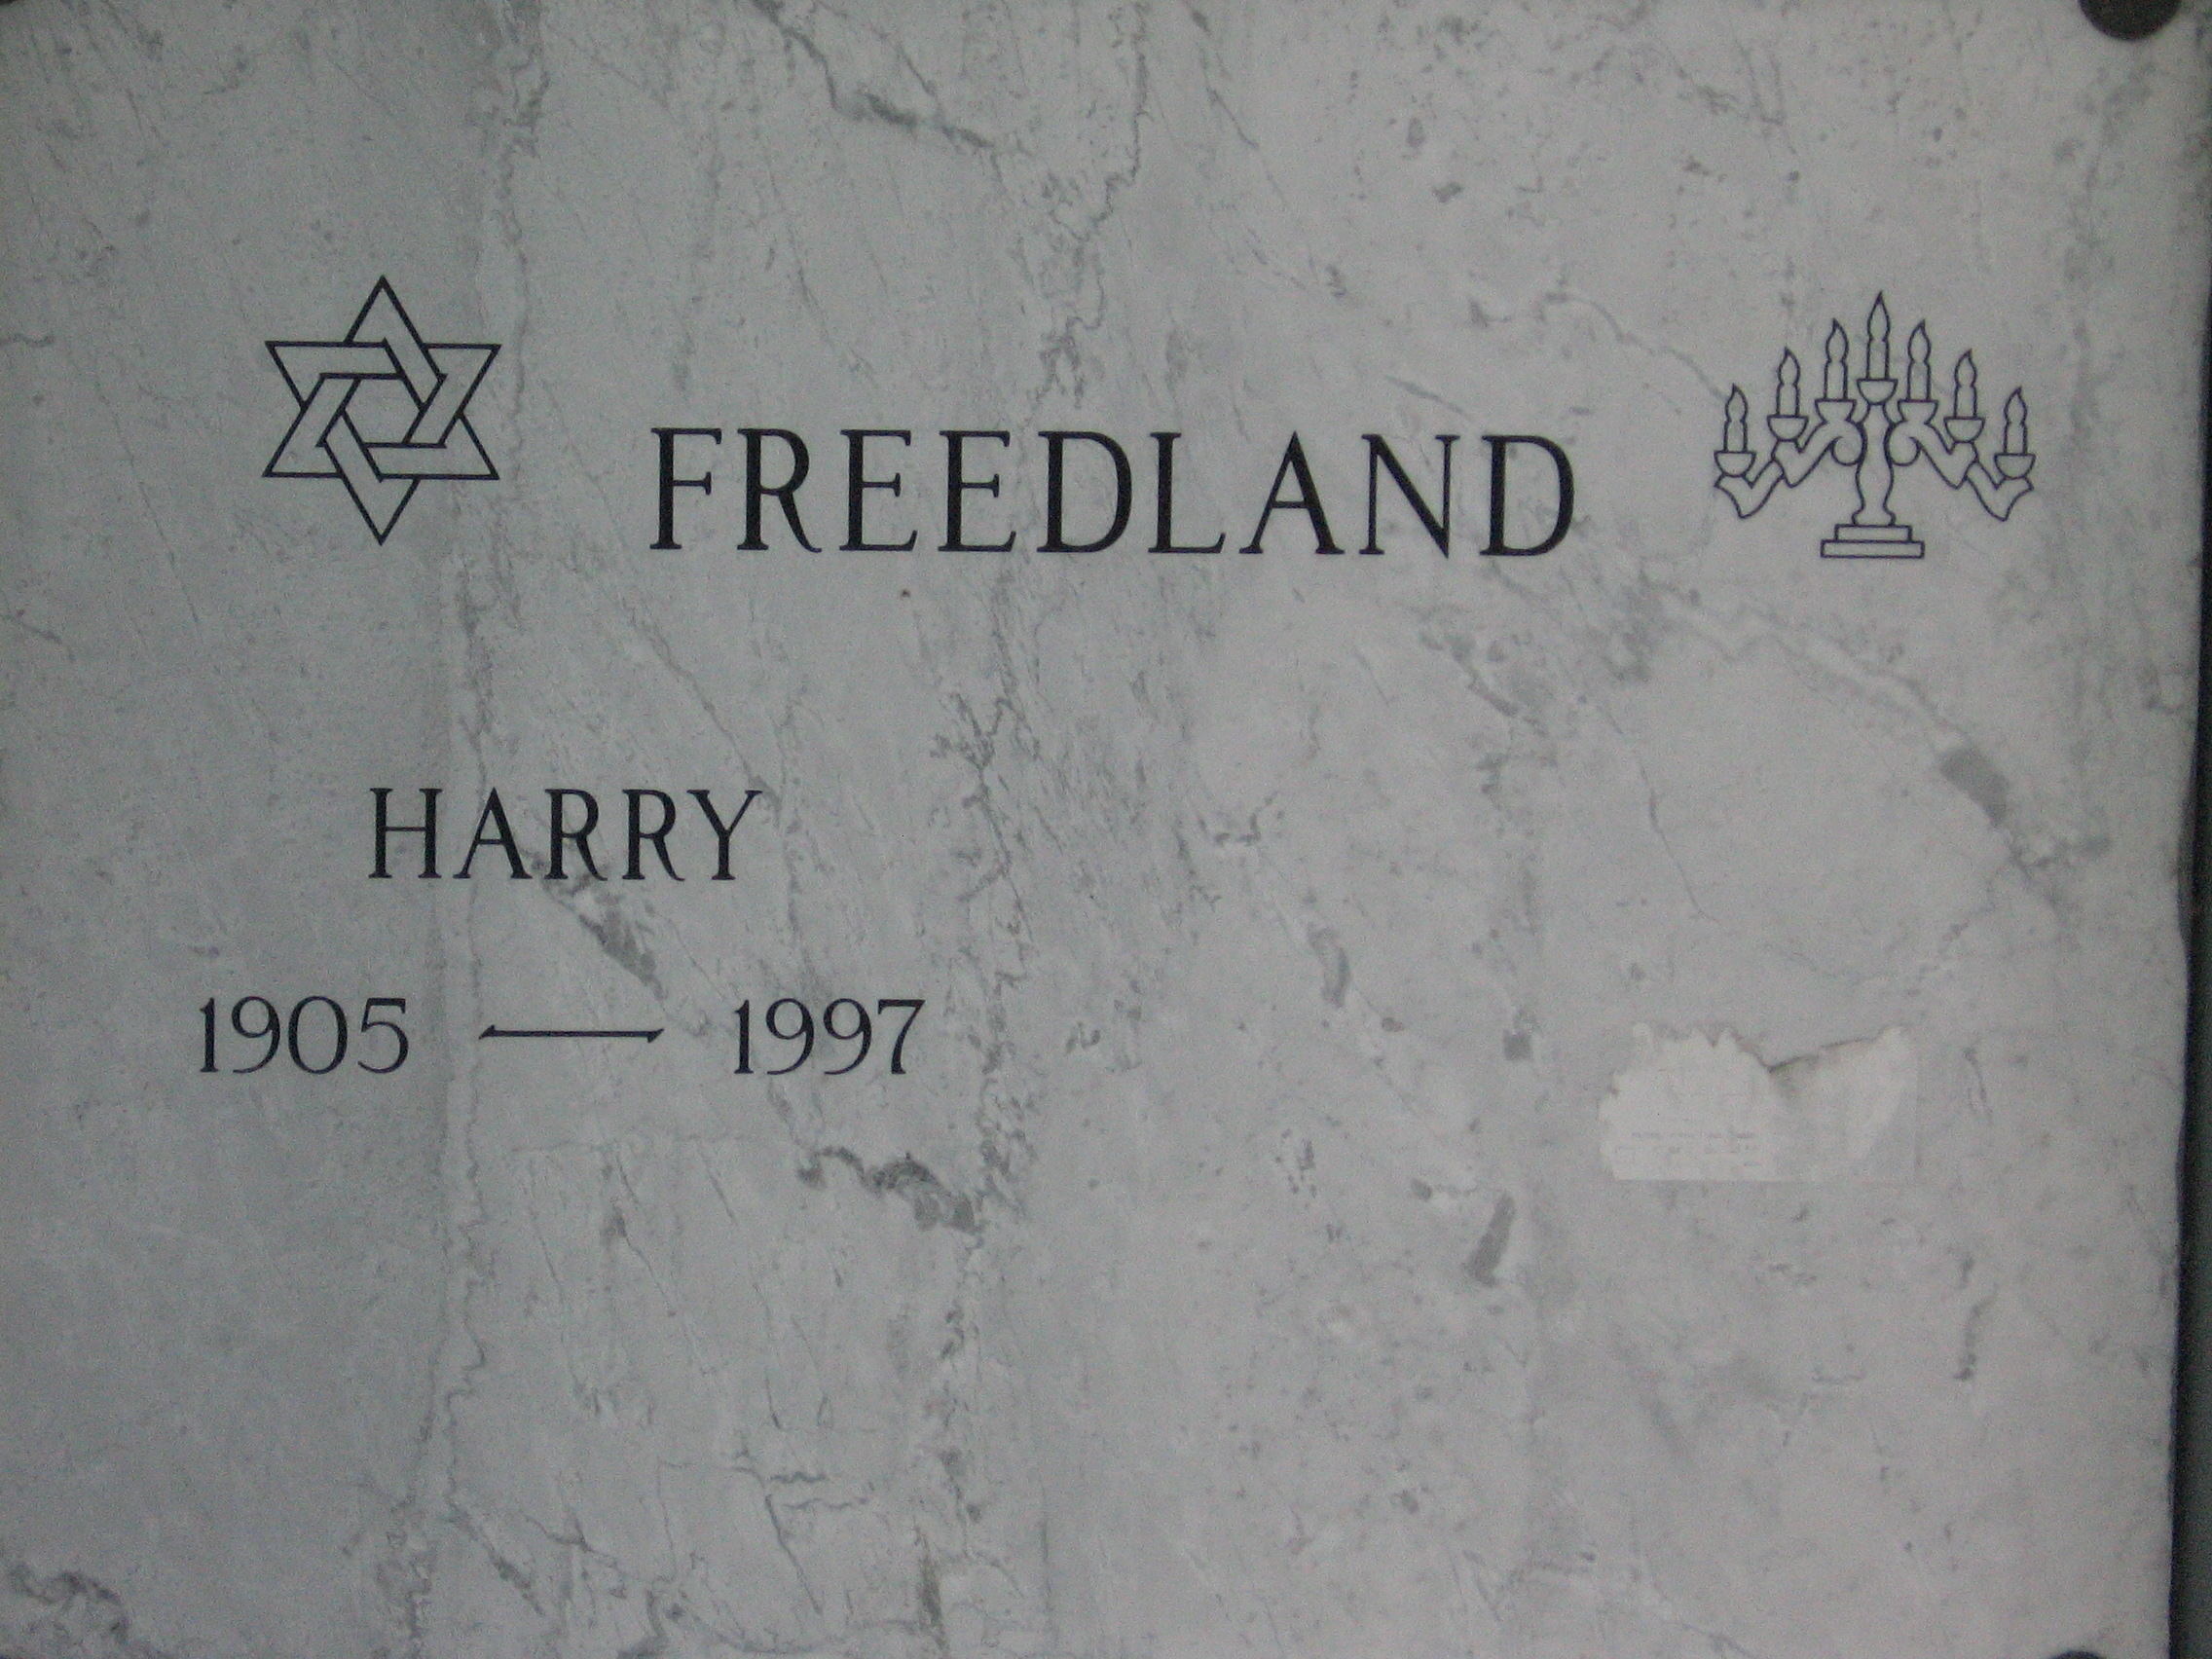 Harry Freedland